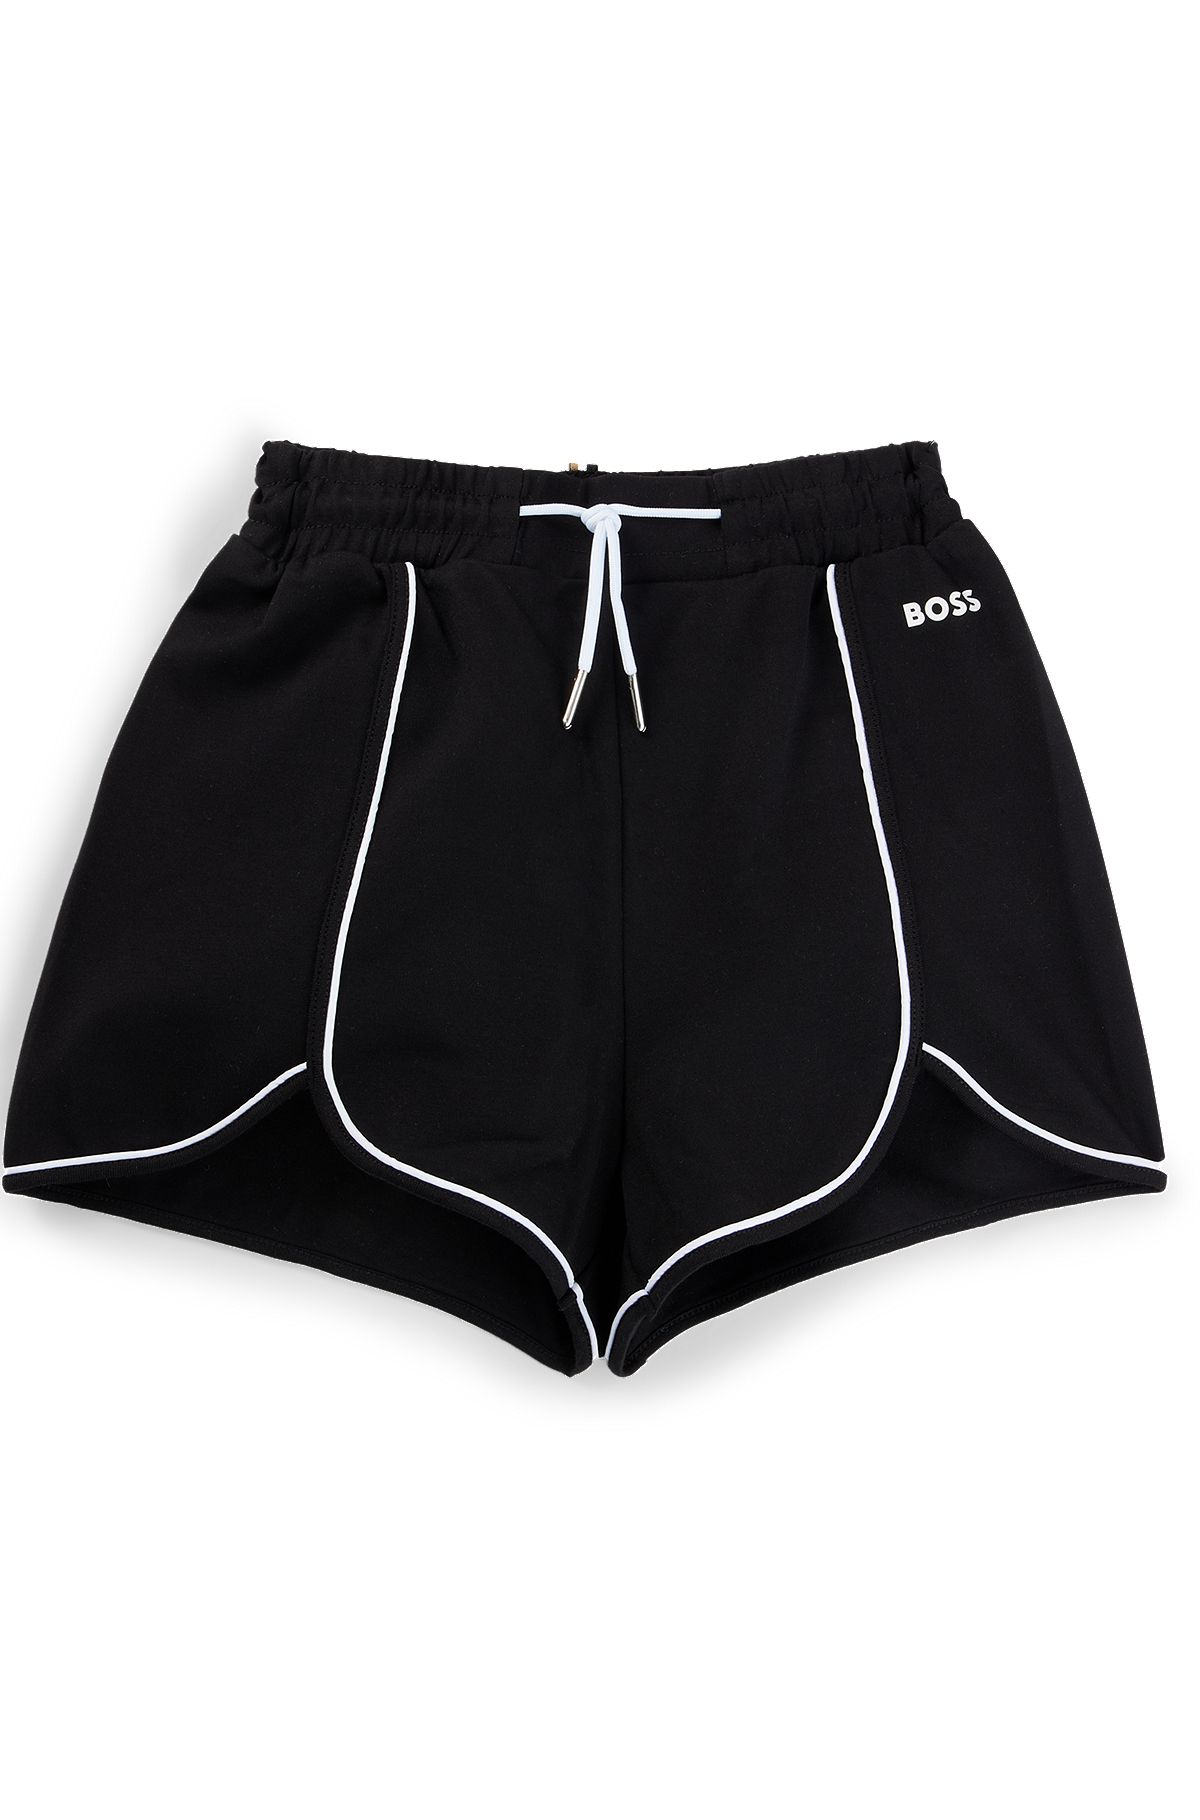 Shorts para niños en tejido elástico con ribetes y logo, Negro